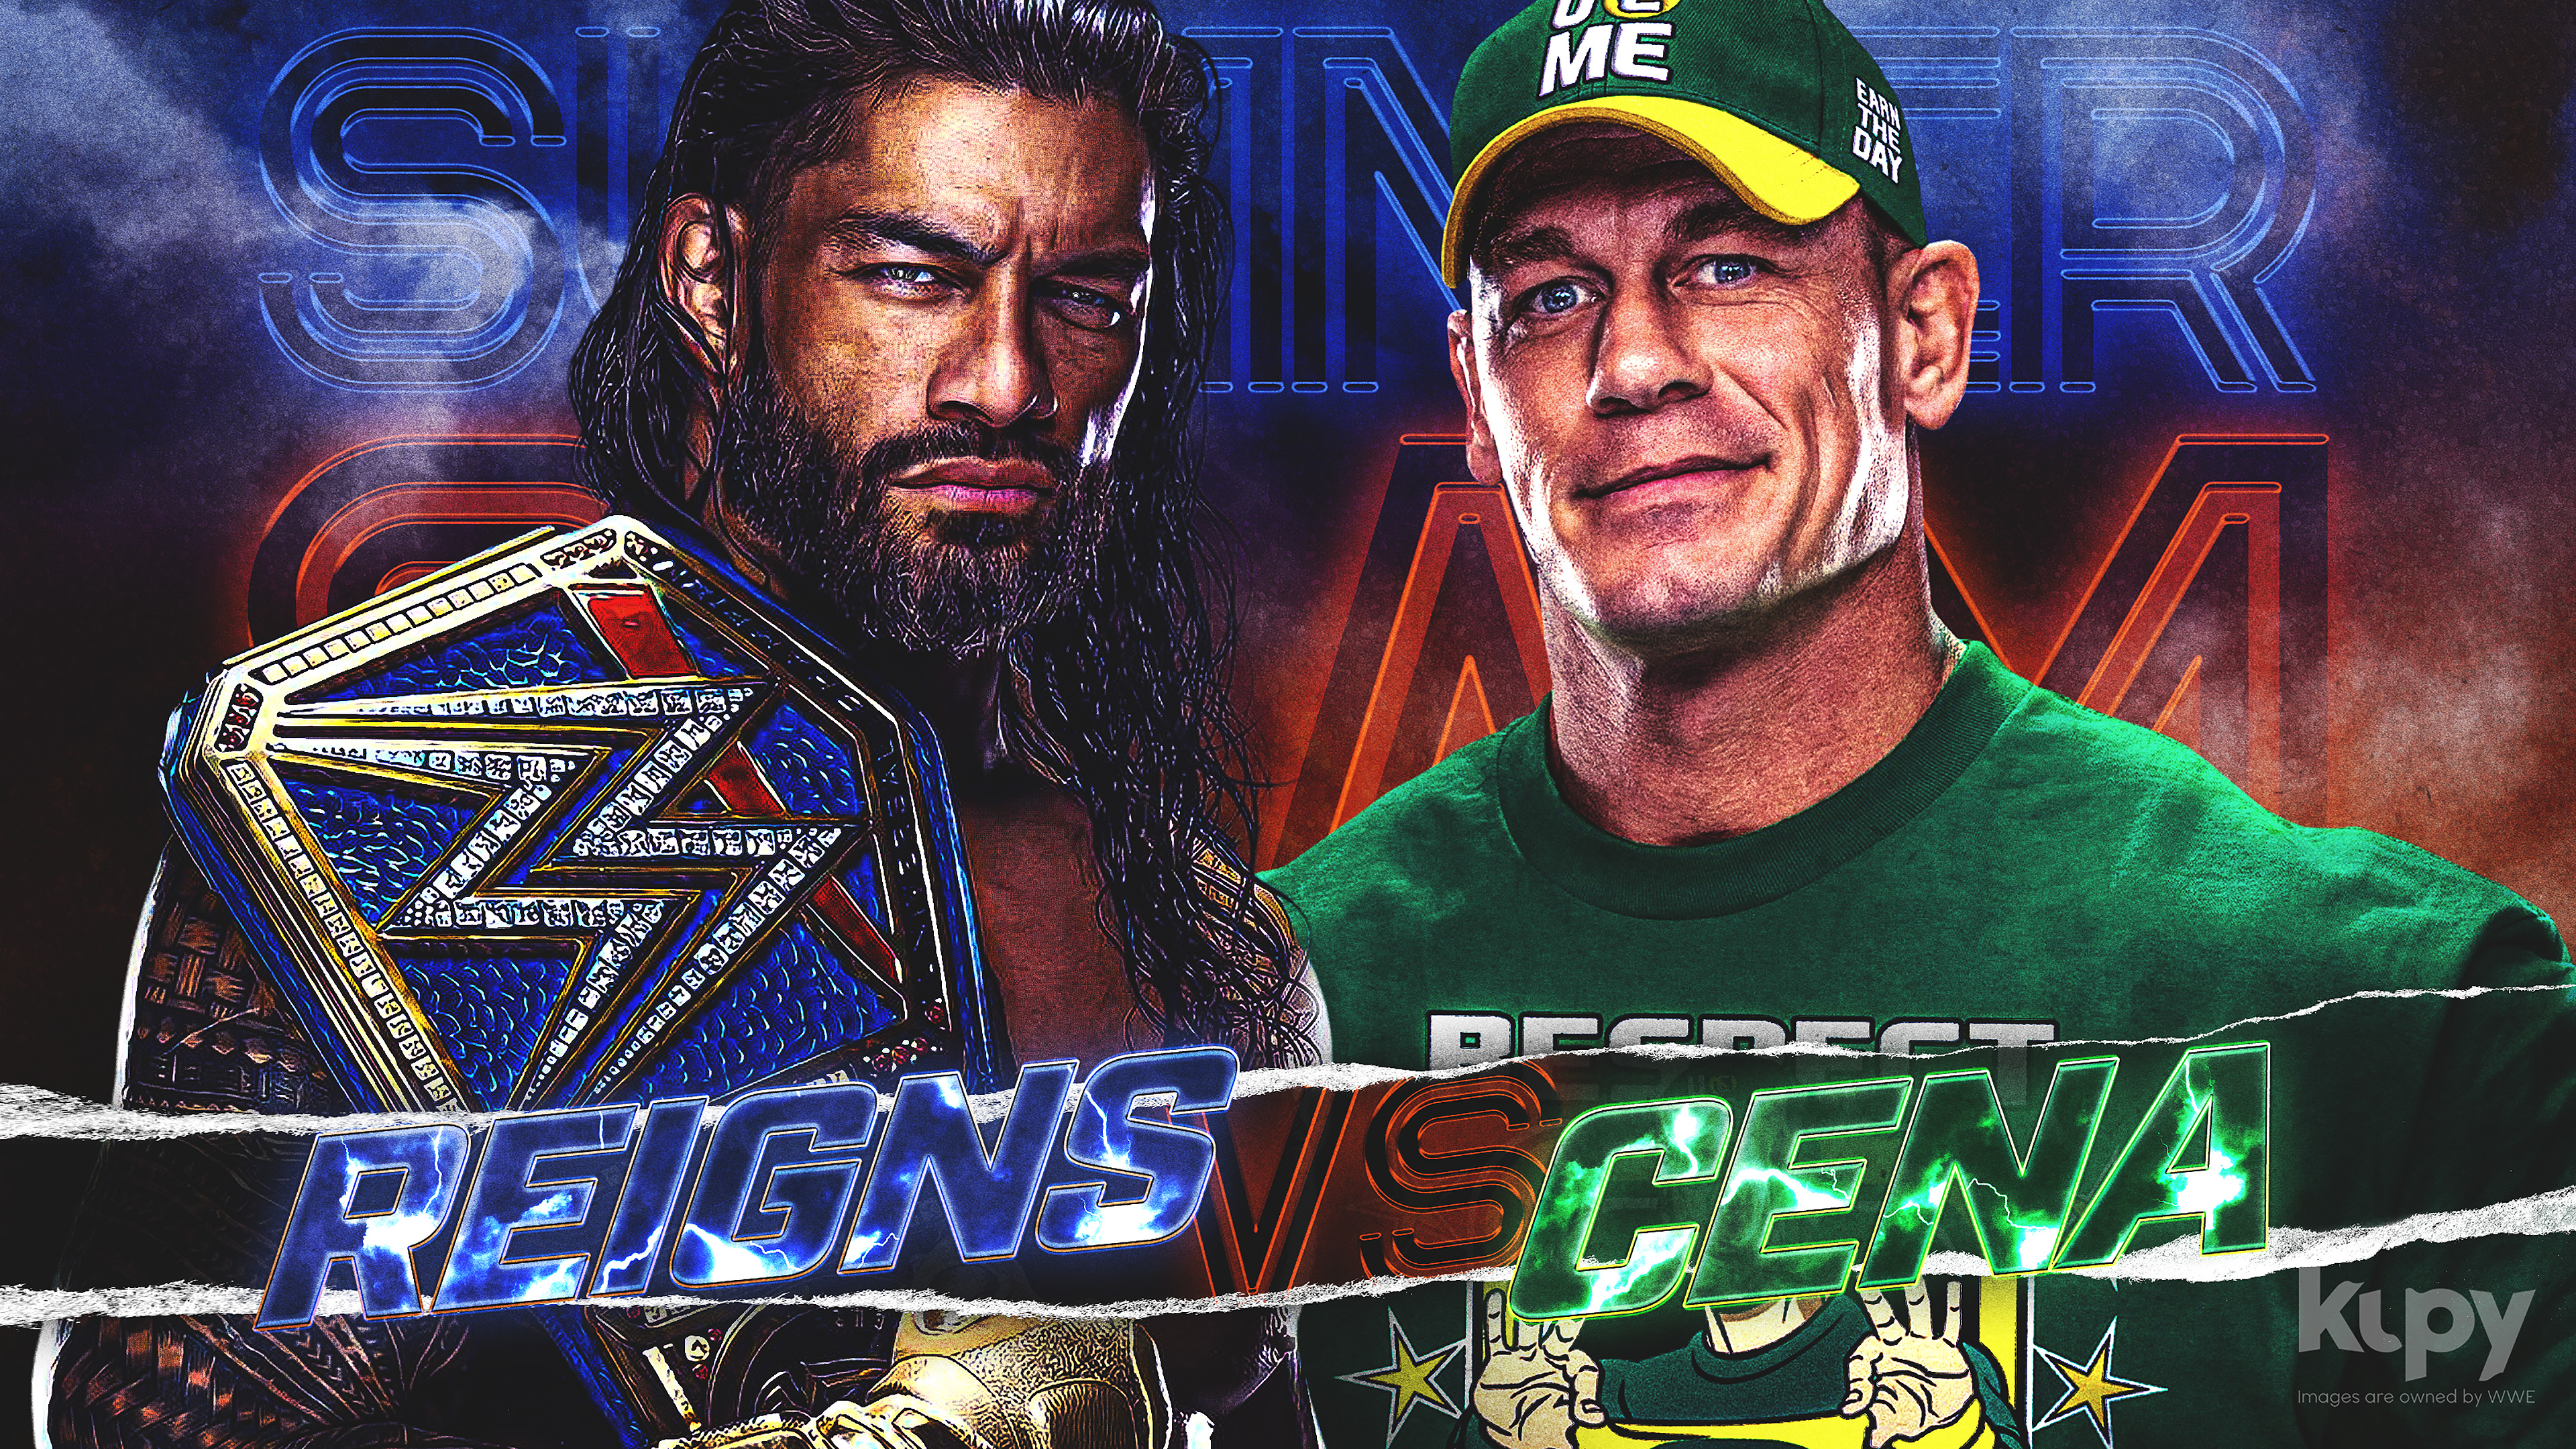 NEW Roman Reigns vs. John Cena SummerSlam wallpaper! - Kupy Wrestling  Wallpapers